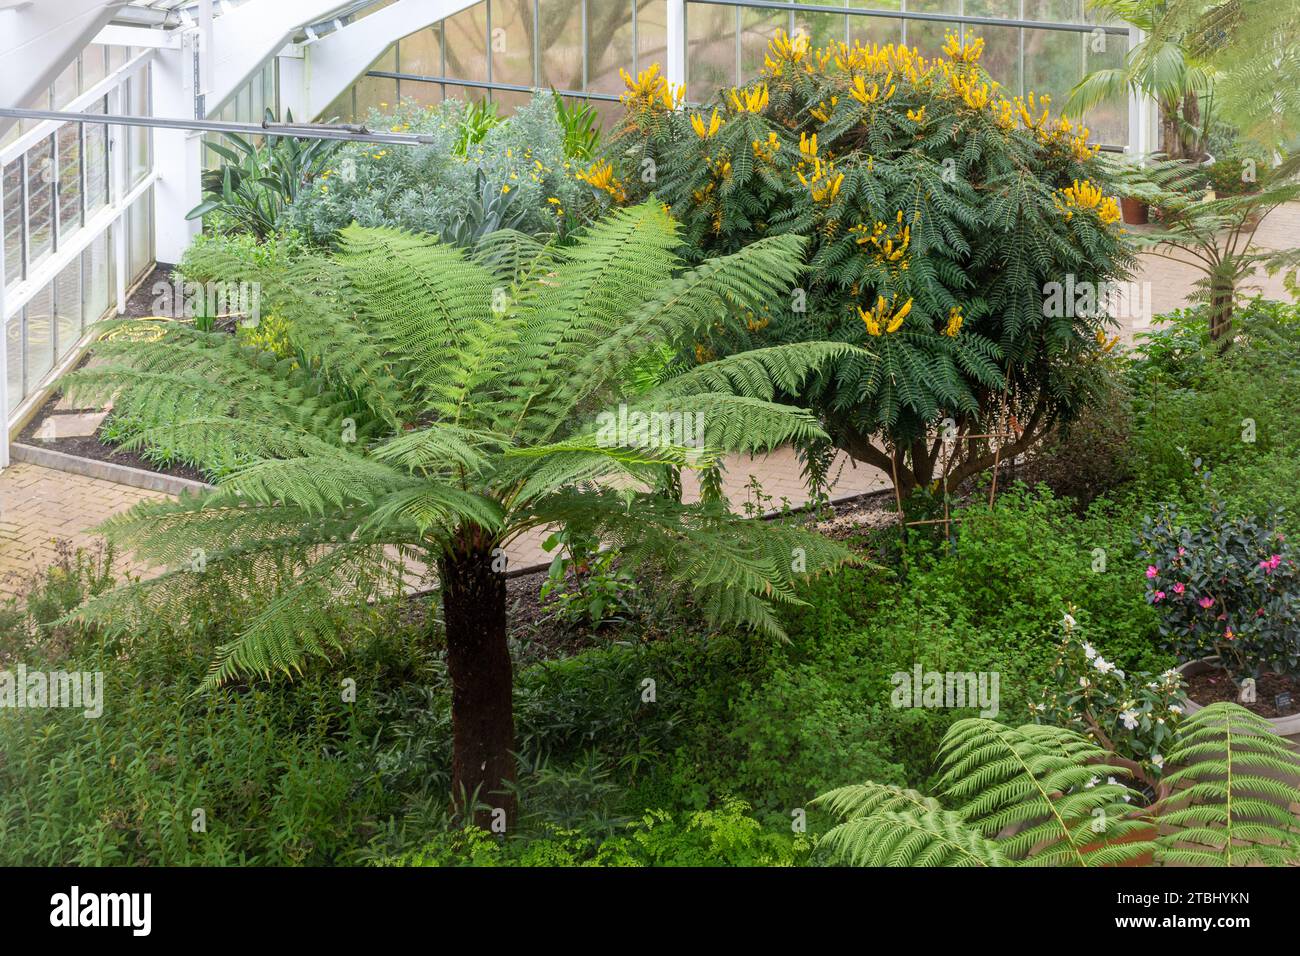 Blick auf Pflanzen wie einen großen Baumfarn und Mahonia oiwakensis Sträucher im Queen Elizabeth Temperate House in Savill Gardens, England, Großbritannien Stockfoto